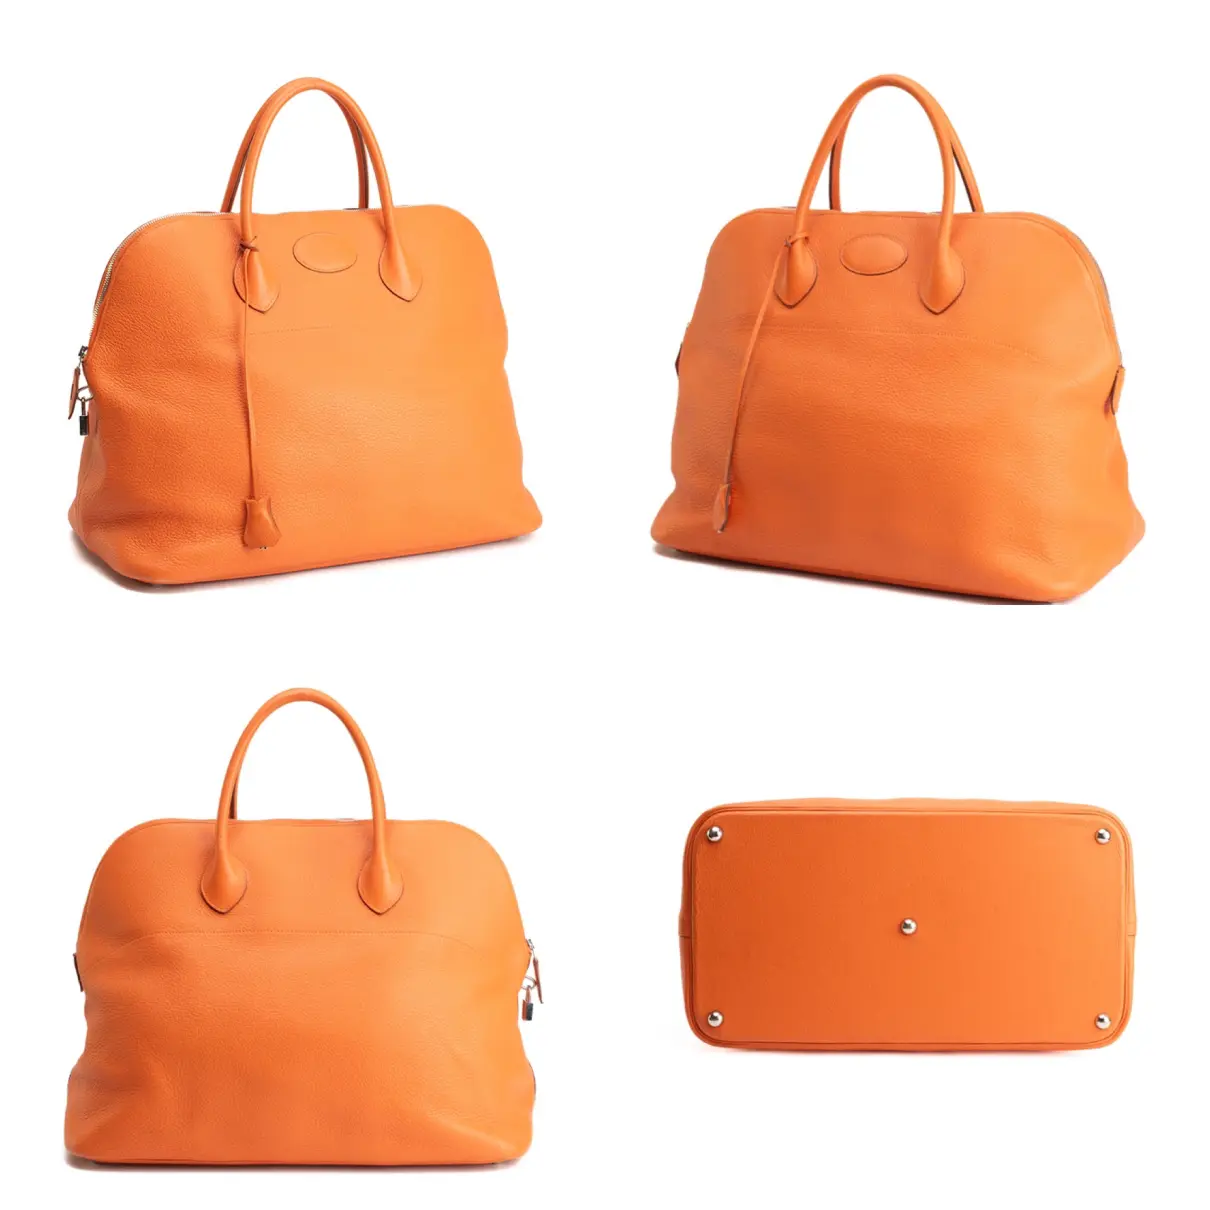 Buy Hermès Bolide leather bag online